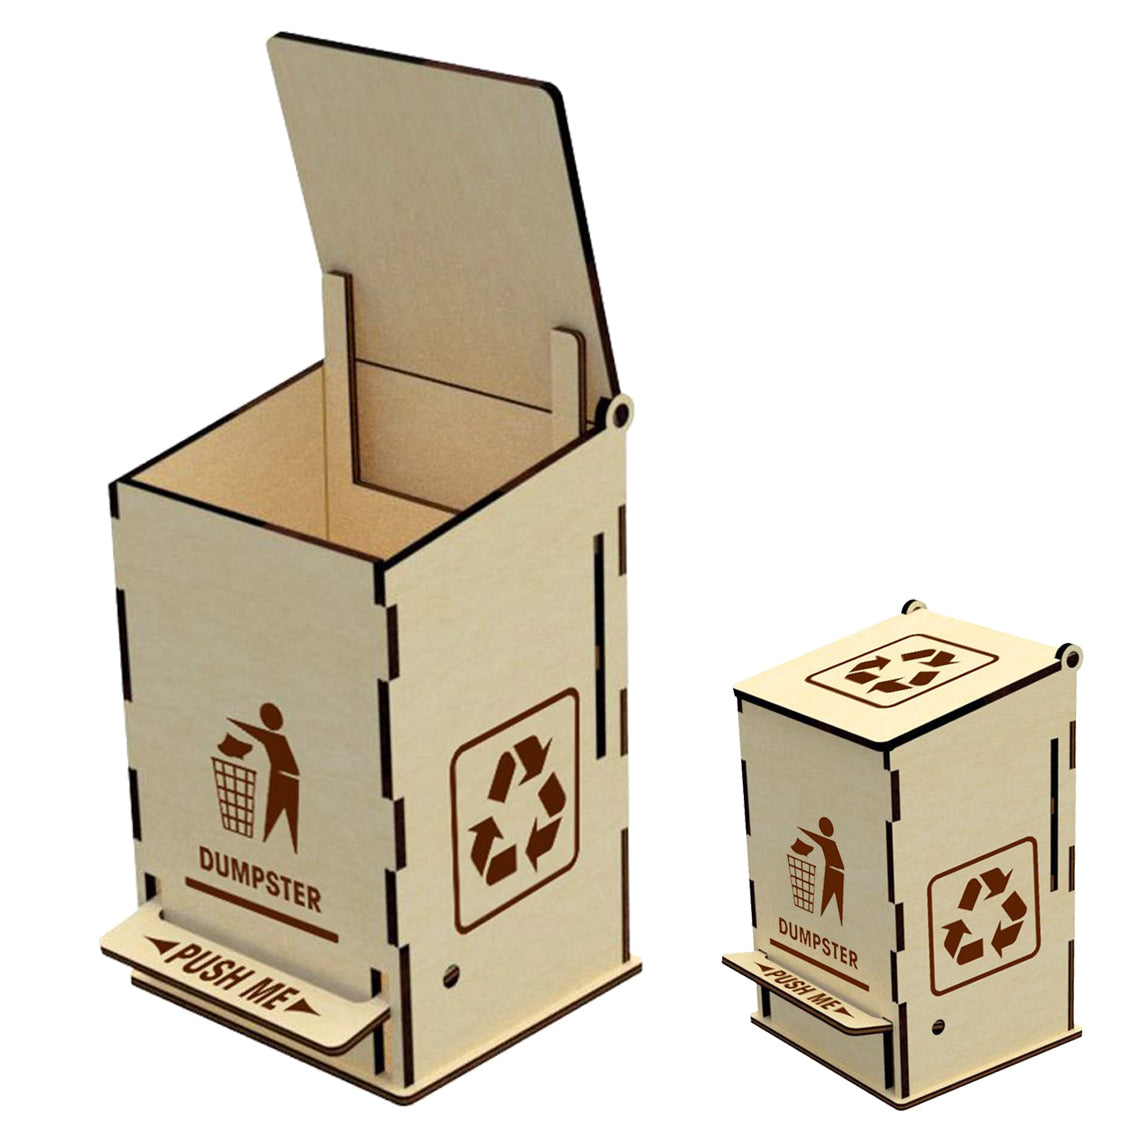 Dumpster wooden box